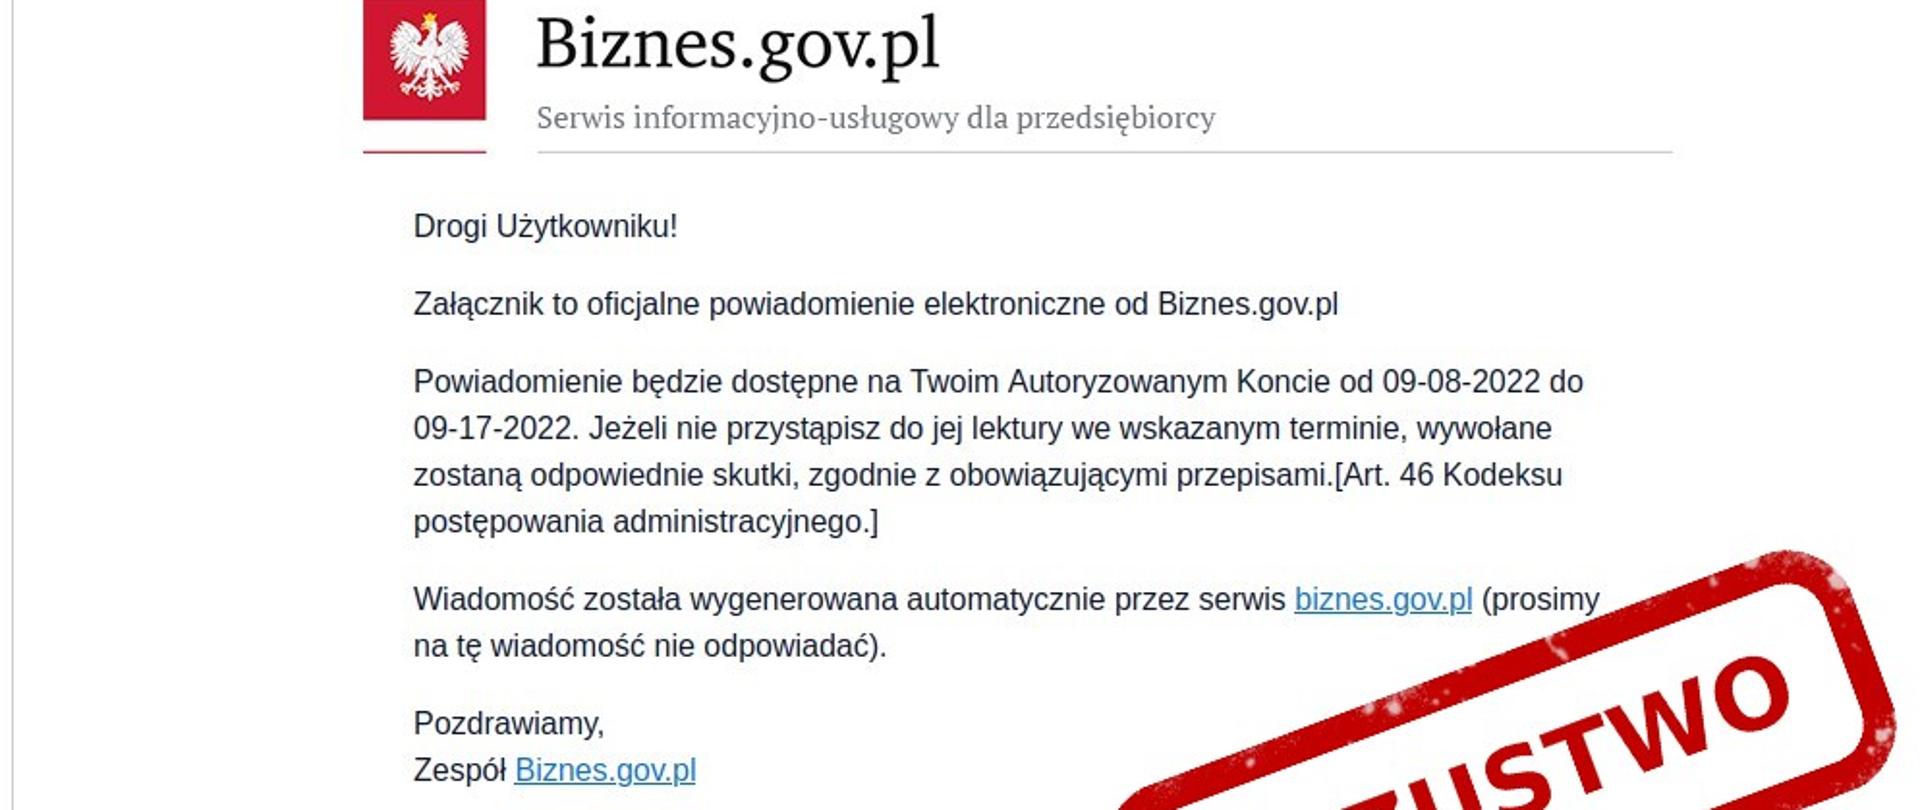 Zdjęcie wiadomości e-mail podszywające się pod portal biznes.gov.plDrogi użytkowniku
Załącznik, to oficjalne powiadomienie elektroniczne od Biznes.gov.pl. Powiadomienie będzie dostępne na Twoim koncie dostępnym od 09-08-2022 do 09-017-2022
Jeśli nie przystąpisz do jej lektury we wskazanym terminie , wywołane zostaną skutki , zgodnie z obowiązującymi przepisami (Art. 46 Kodeksu postępowania administracyjnego)
wiadomość została wygenerowana automatycznie przez serwis Biznes.gov.pl